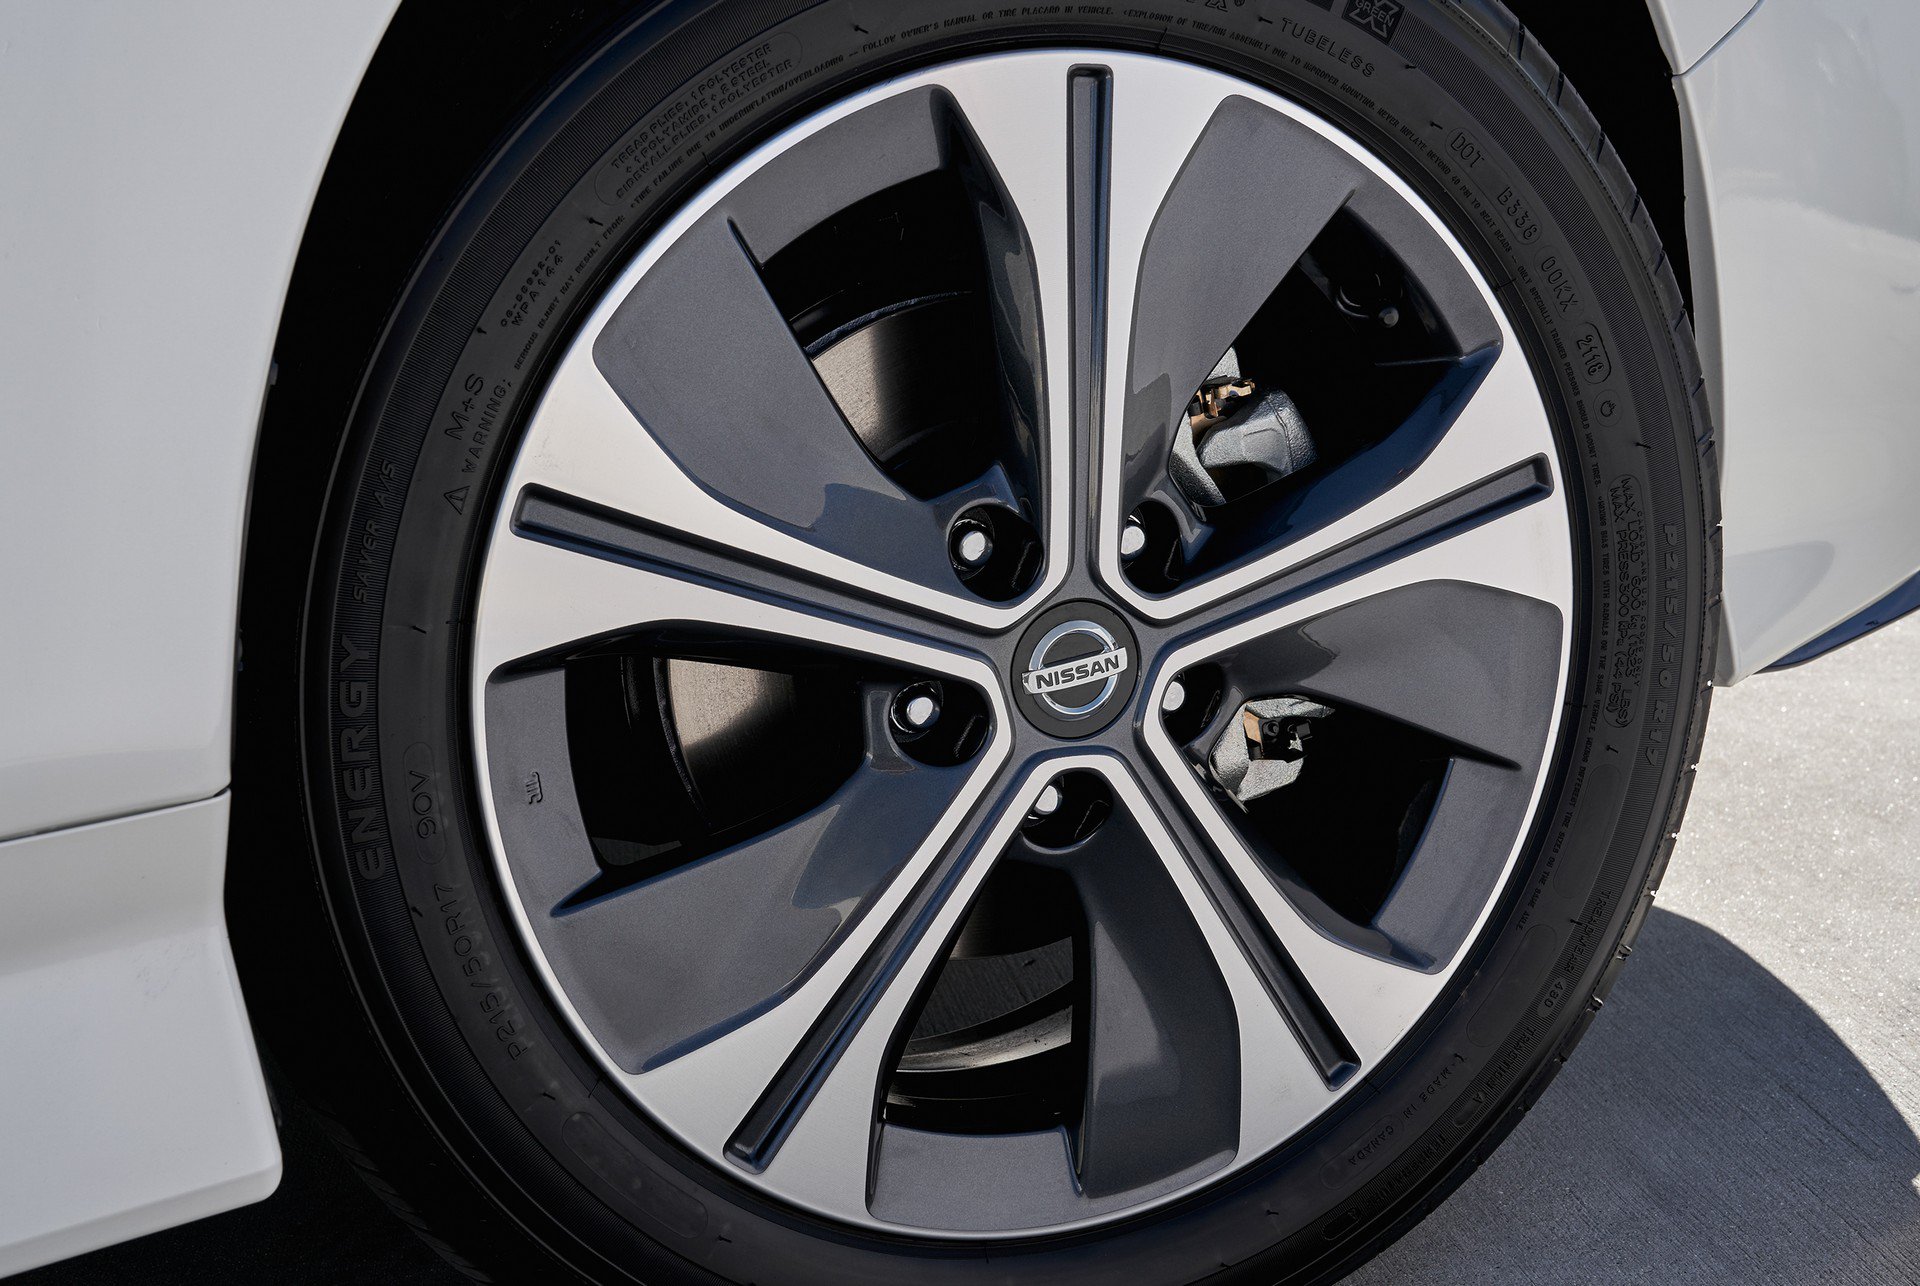 Nissan Leaf E+ tanıtıldı: Daha uzun menzil, daha güçlü motor